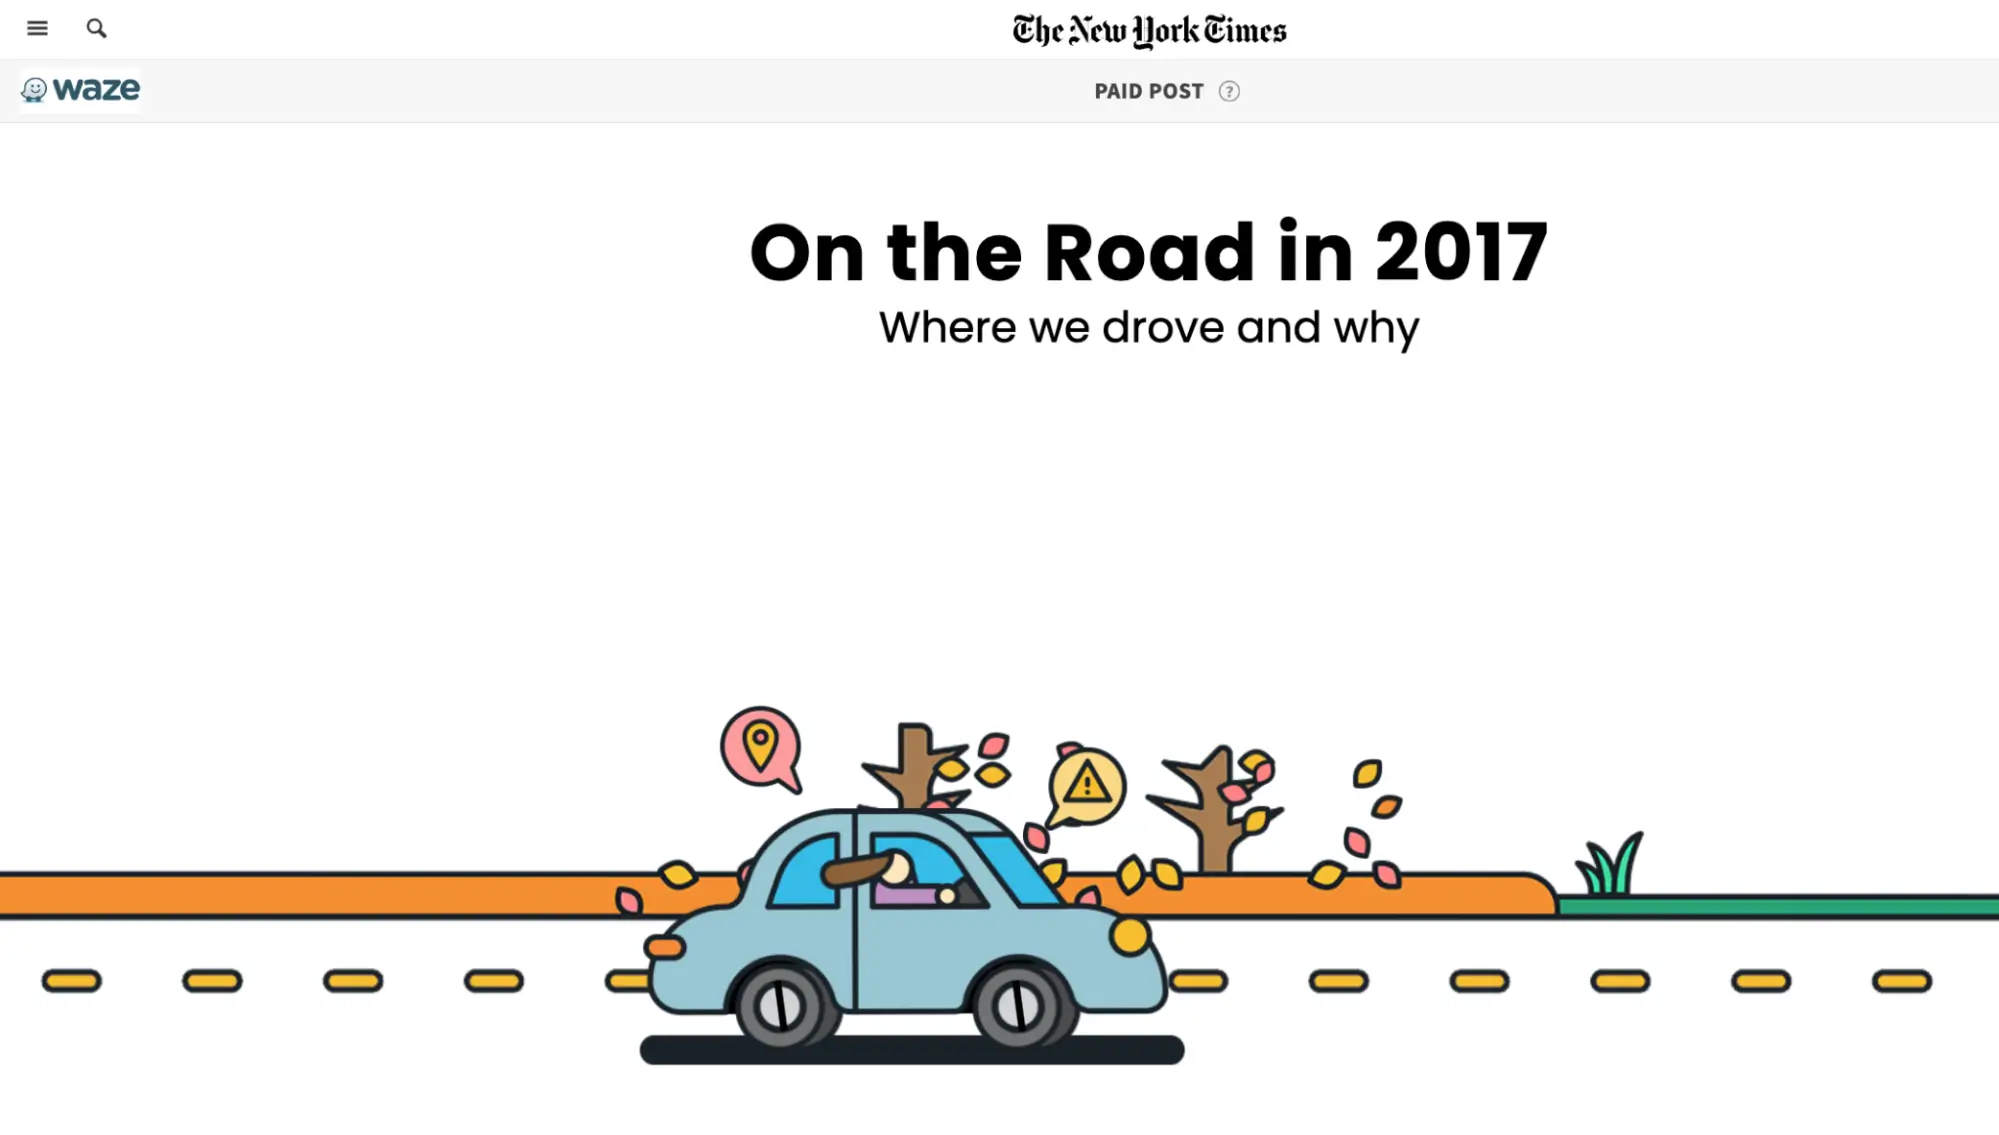 На этом изображении показана кампания Waze «В дороге», созданная в сотрудничестве с New York Times, с интерактивным контентом, основанным на реальных данных приложения. Целью кампании было выявить движущие тенденции и причины, стоящие за ними, предлагая информативный контент, которым можно было бы поделиться, через интерактивную страницу с запоминающейся графикой.